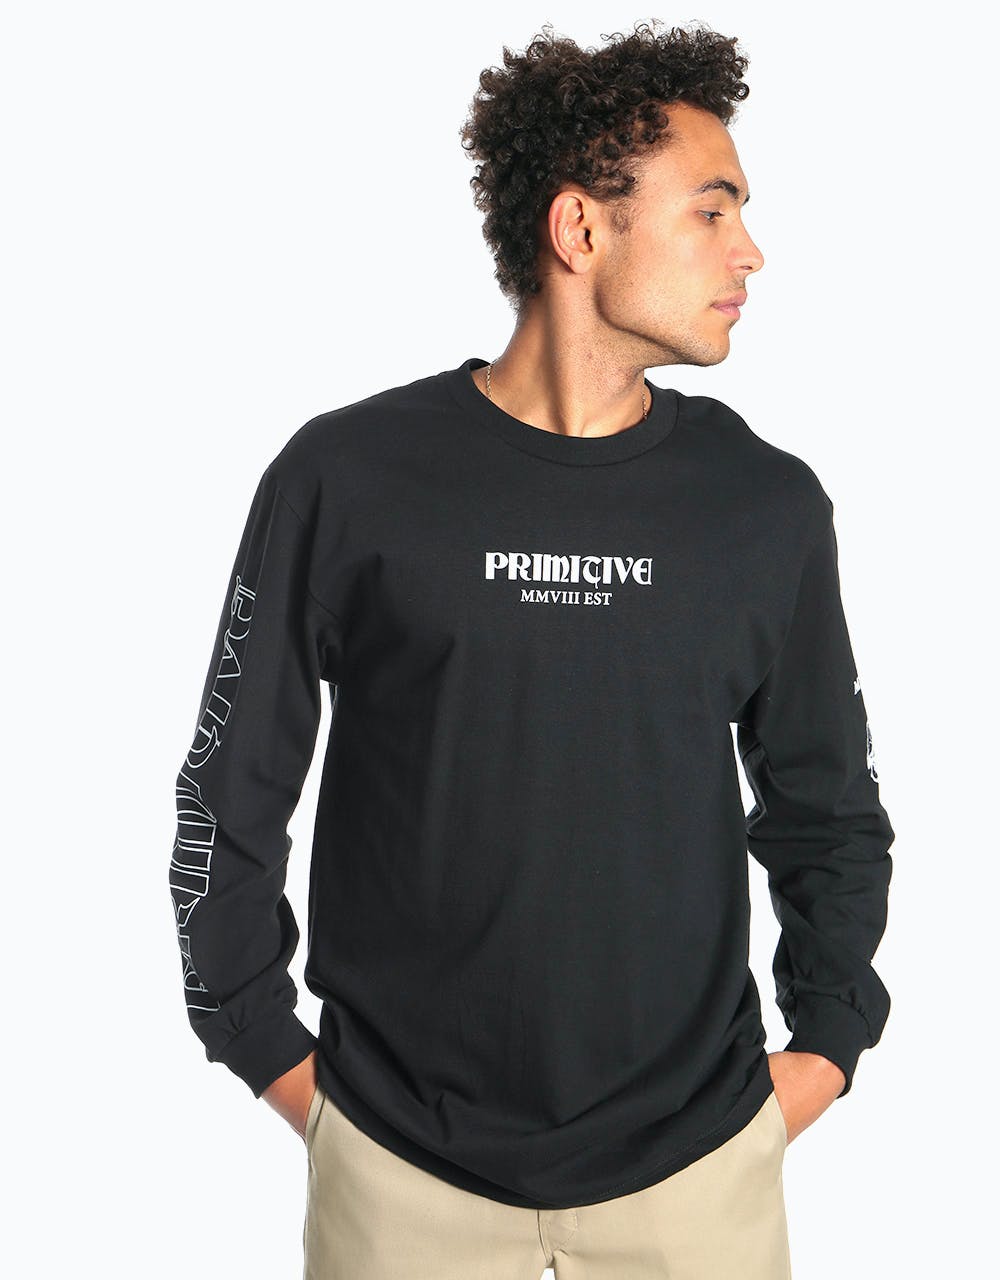 Primitive Founders L/S T-Shirt - Black